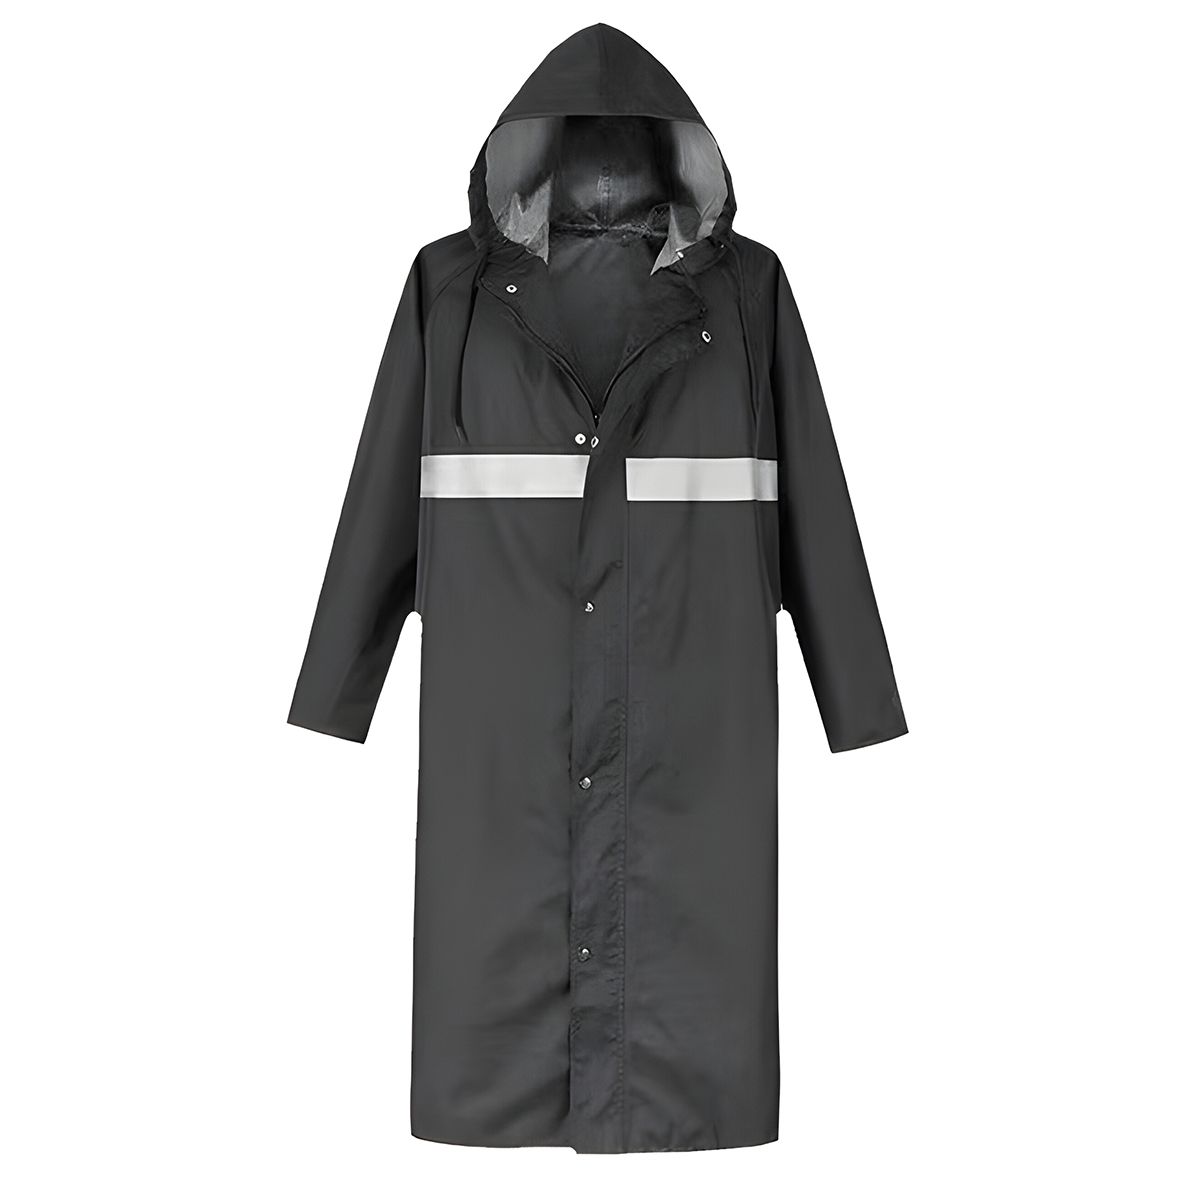 Rain Suit Jacket Outdoor Waterproof Anti-storm with Hat Long Coat ...